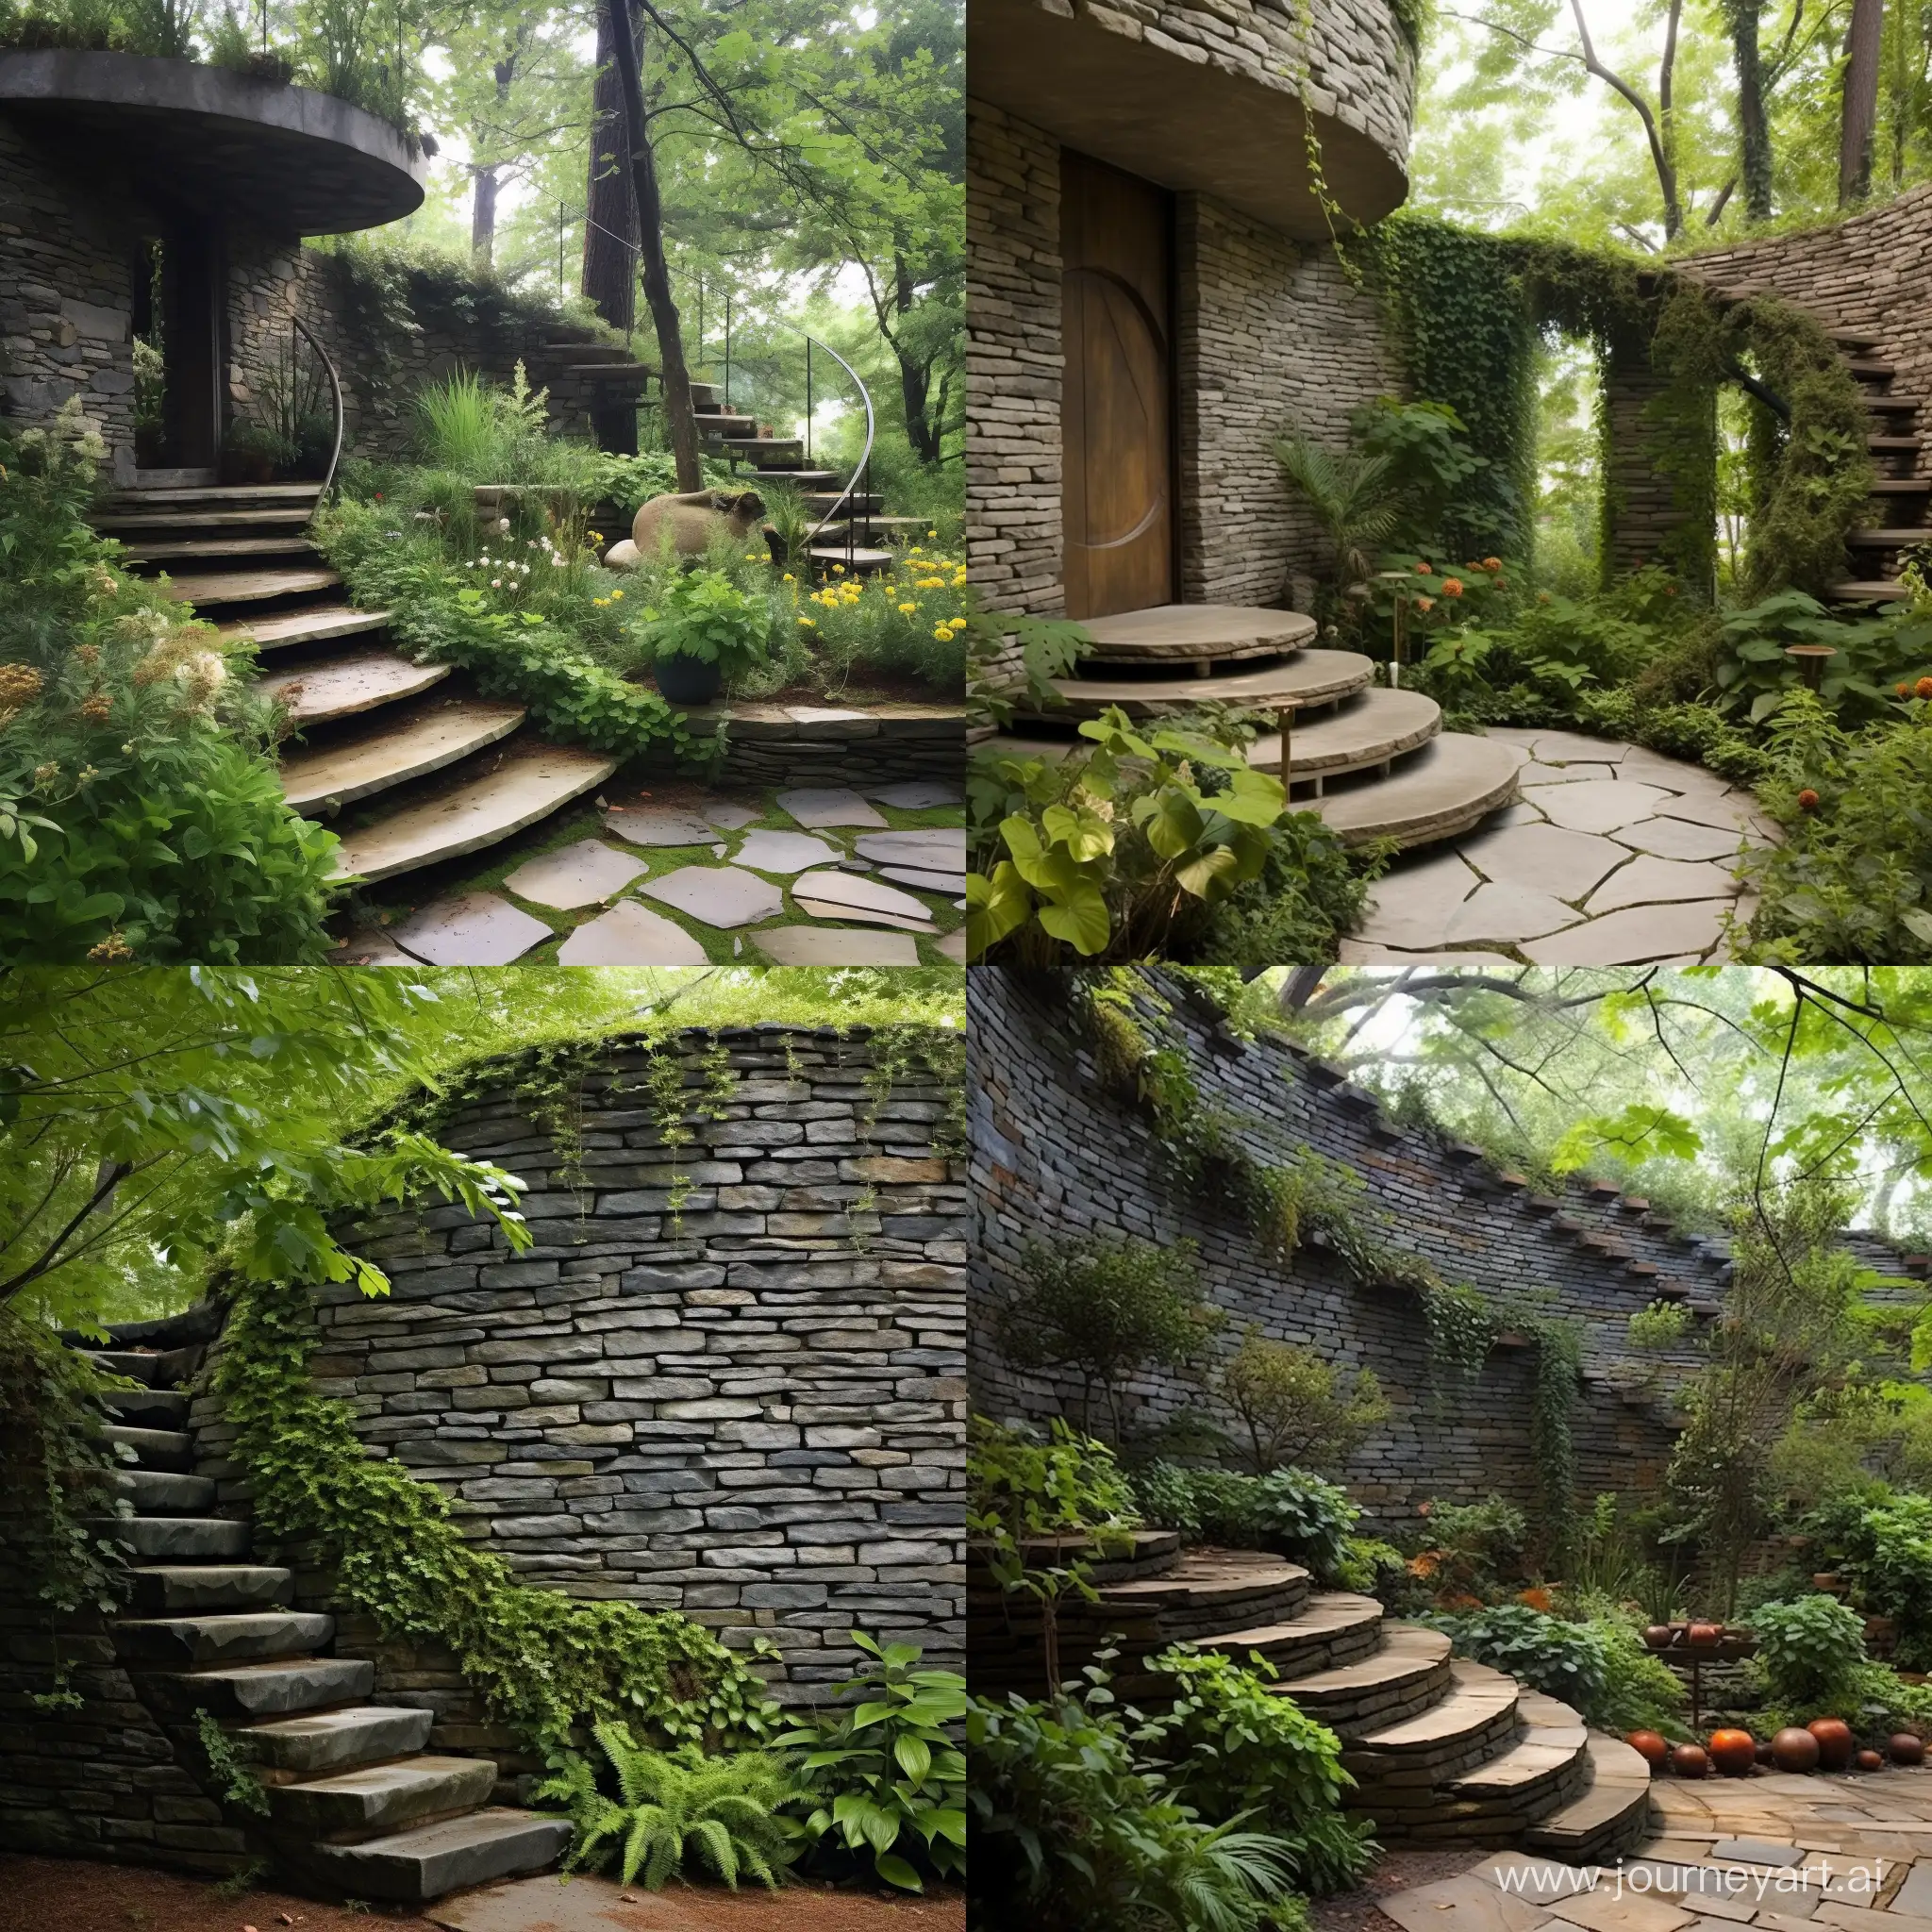 Enchanting-Circular-Tower-Staircase-Alongside-a-Garden-Stone-Wall